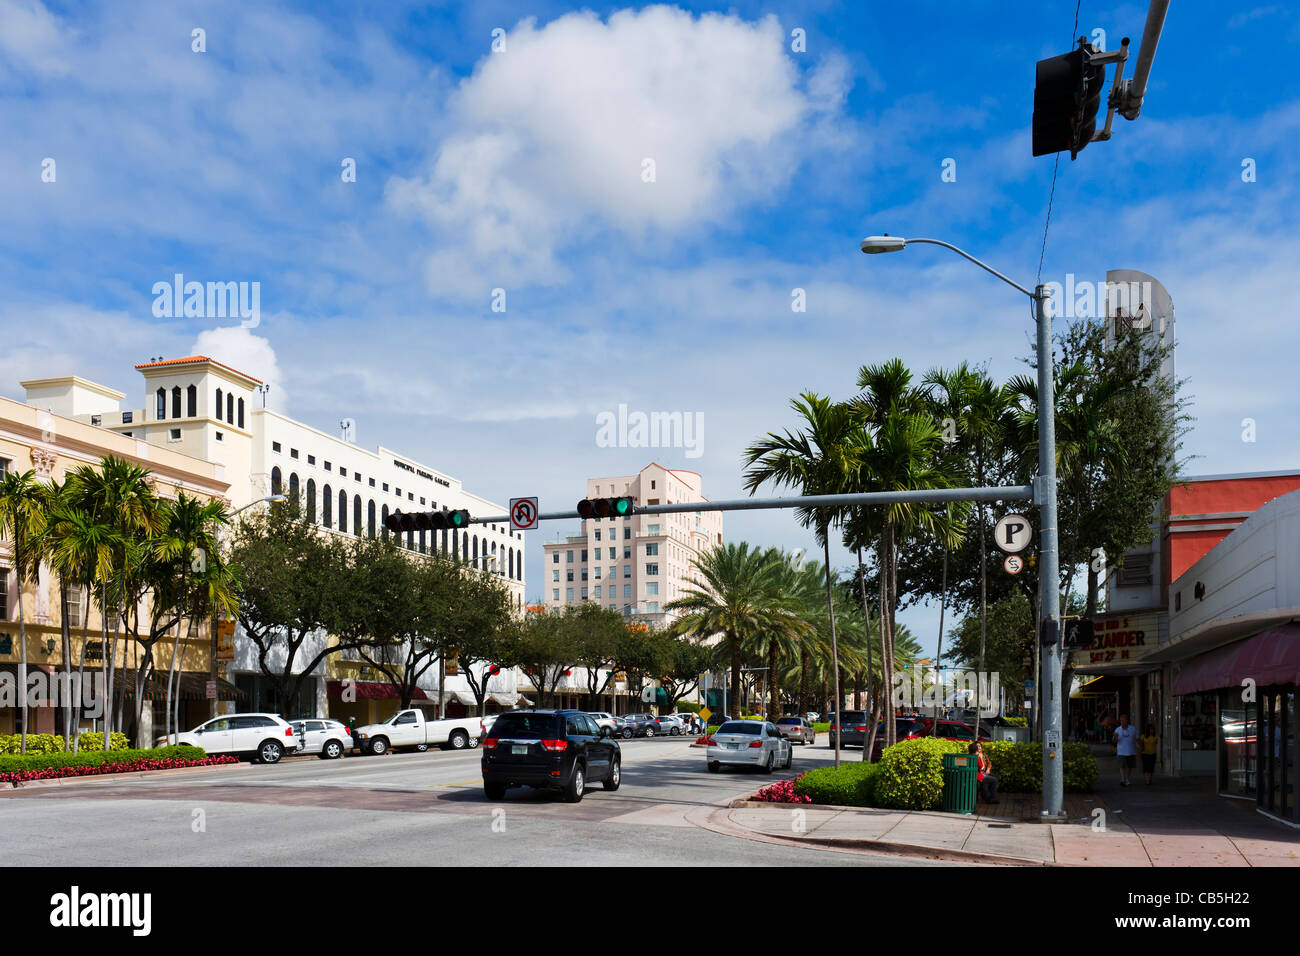 Boutiques sur le Miracle Mile (Coral Way) au centre-ville de Coral Gables, Miami, Floride, USA Banque D'Images